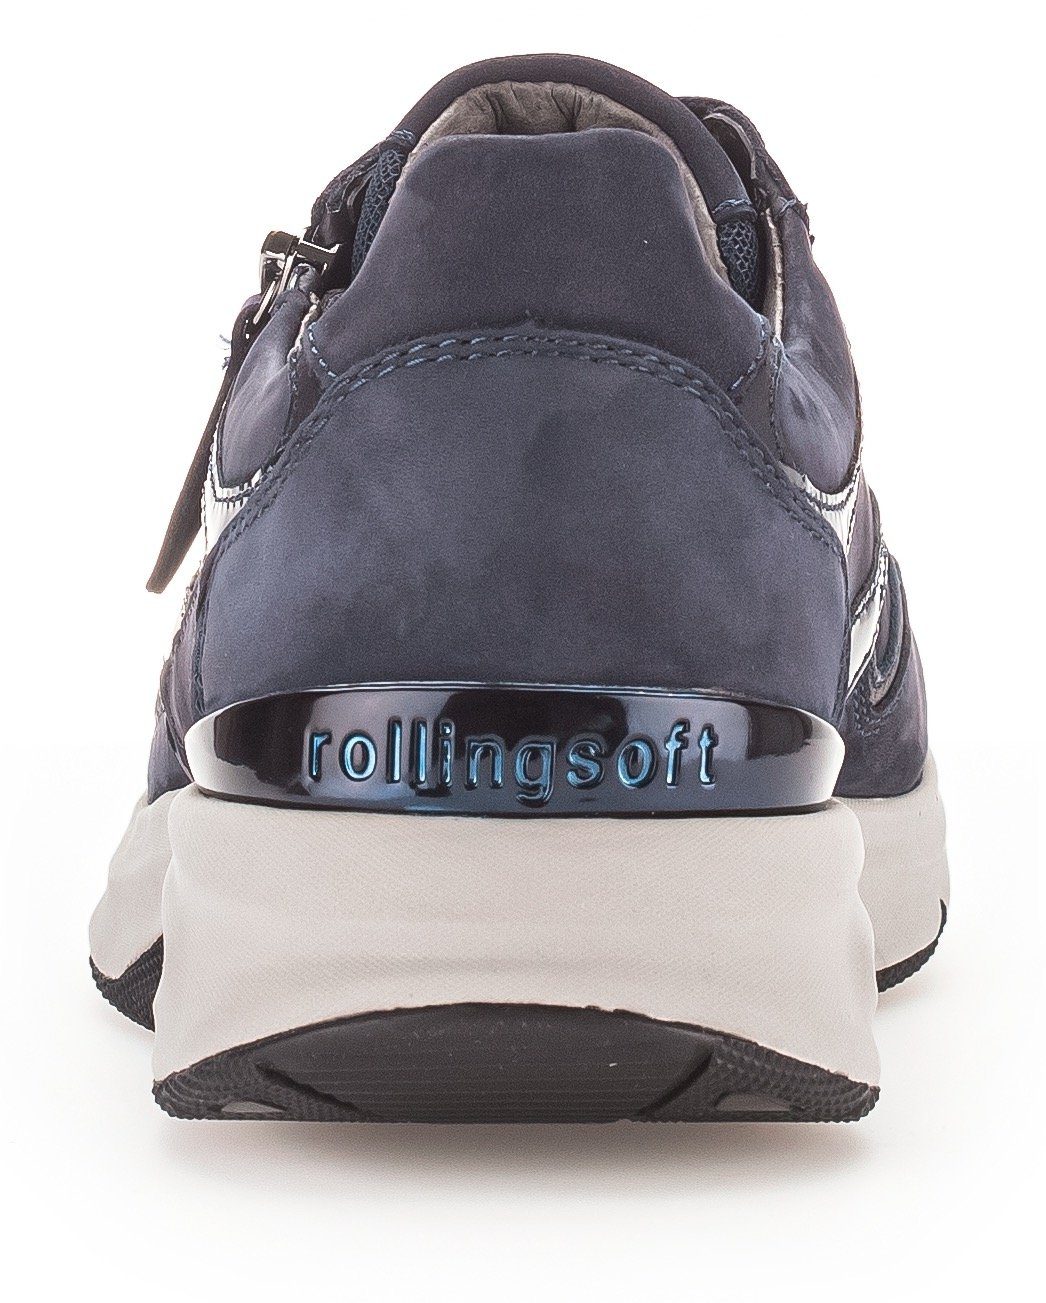 praktischem Außenreißverschluss mit Rollingsoft blau Gabor Keilsneaker